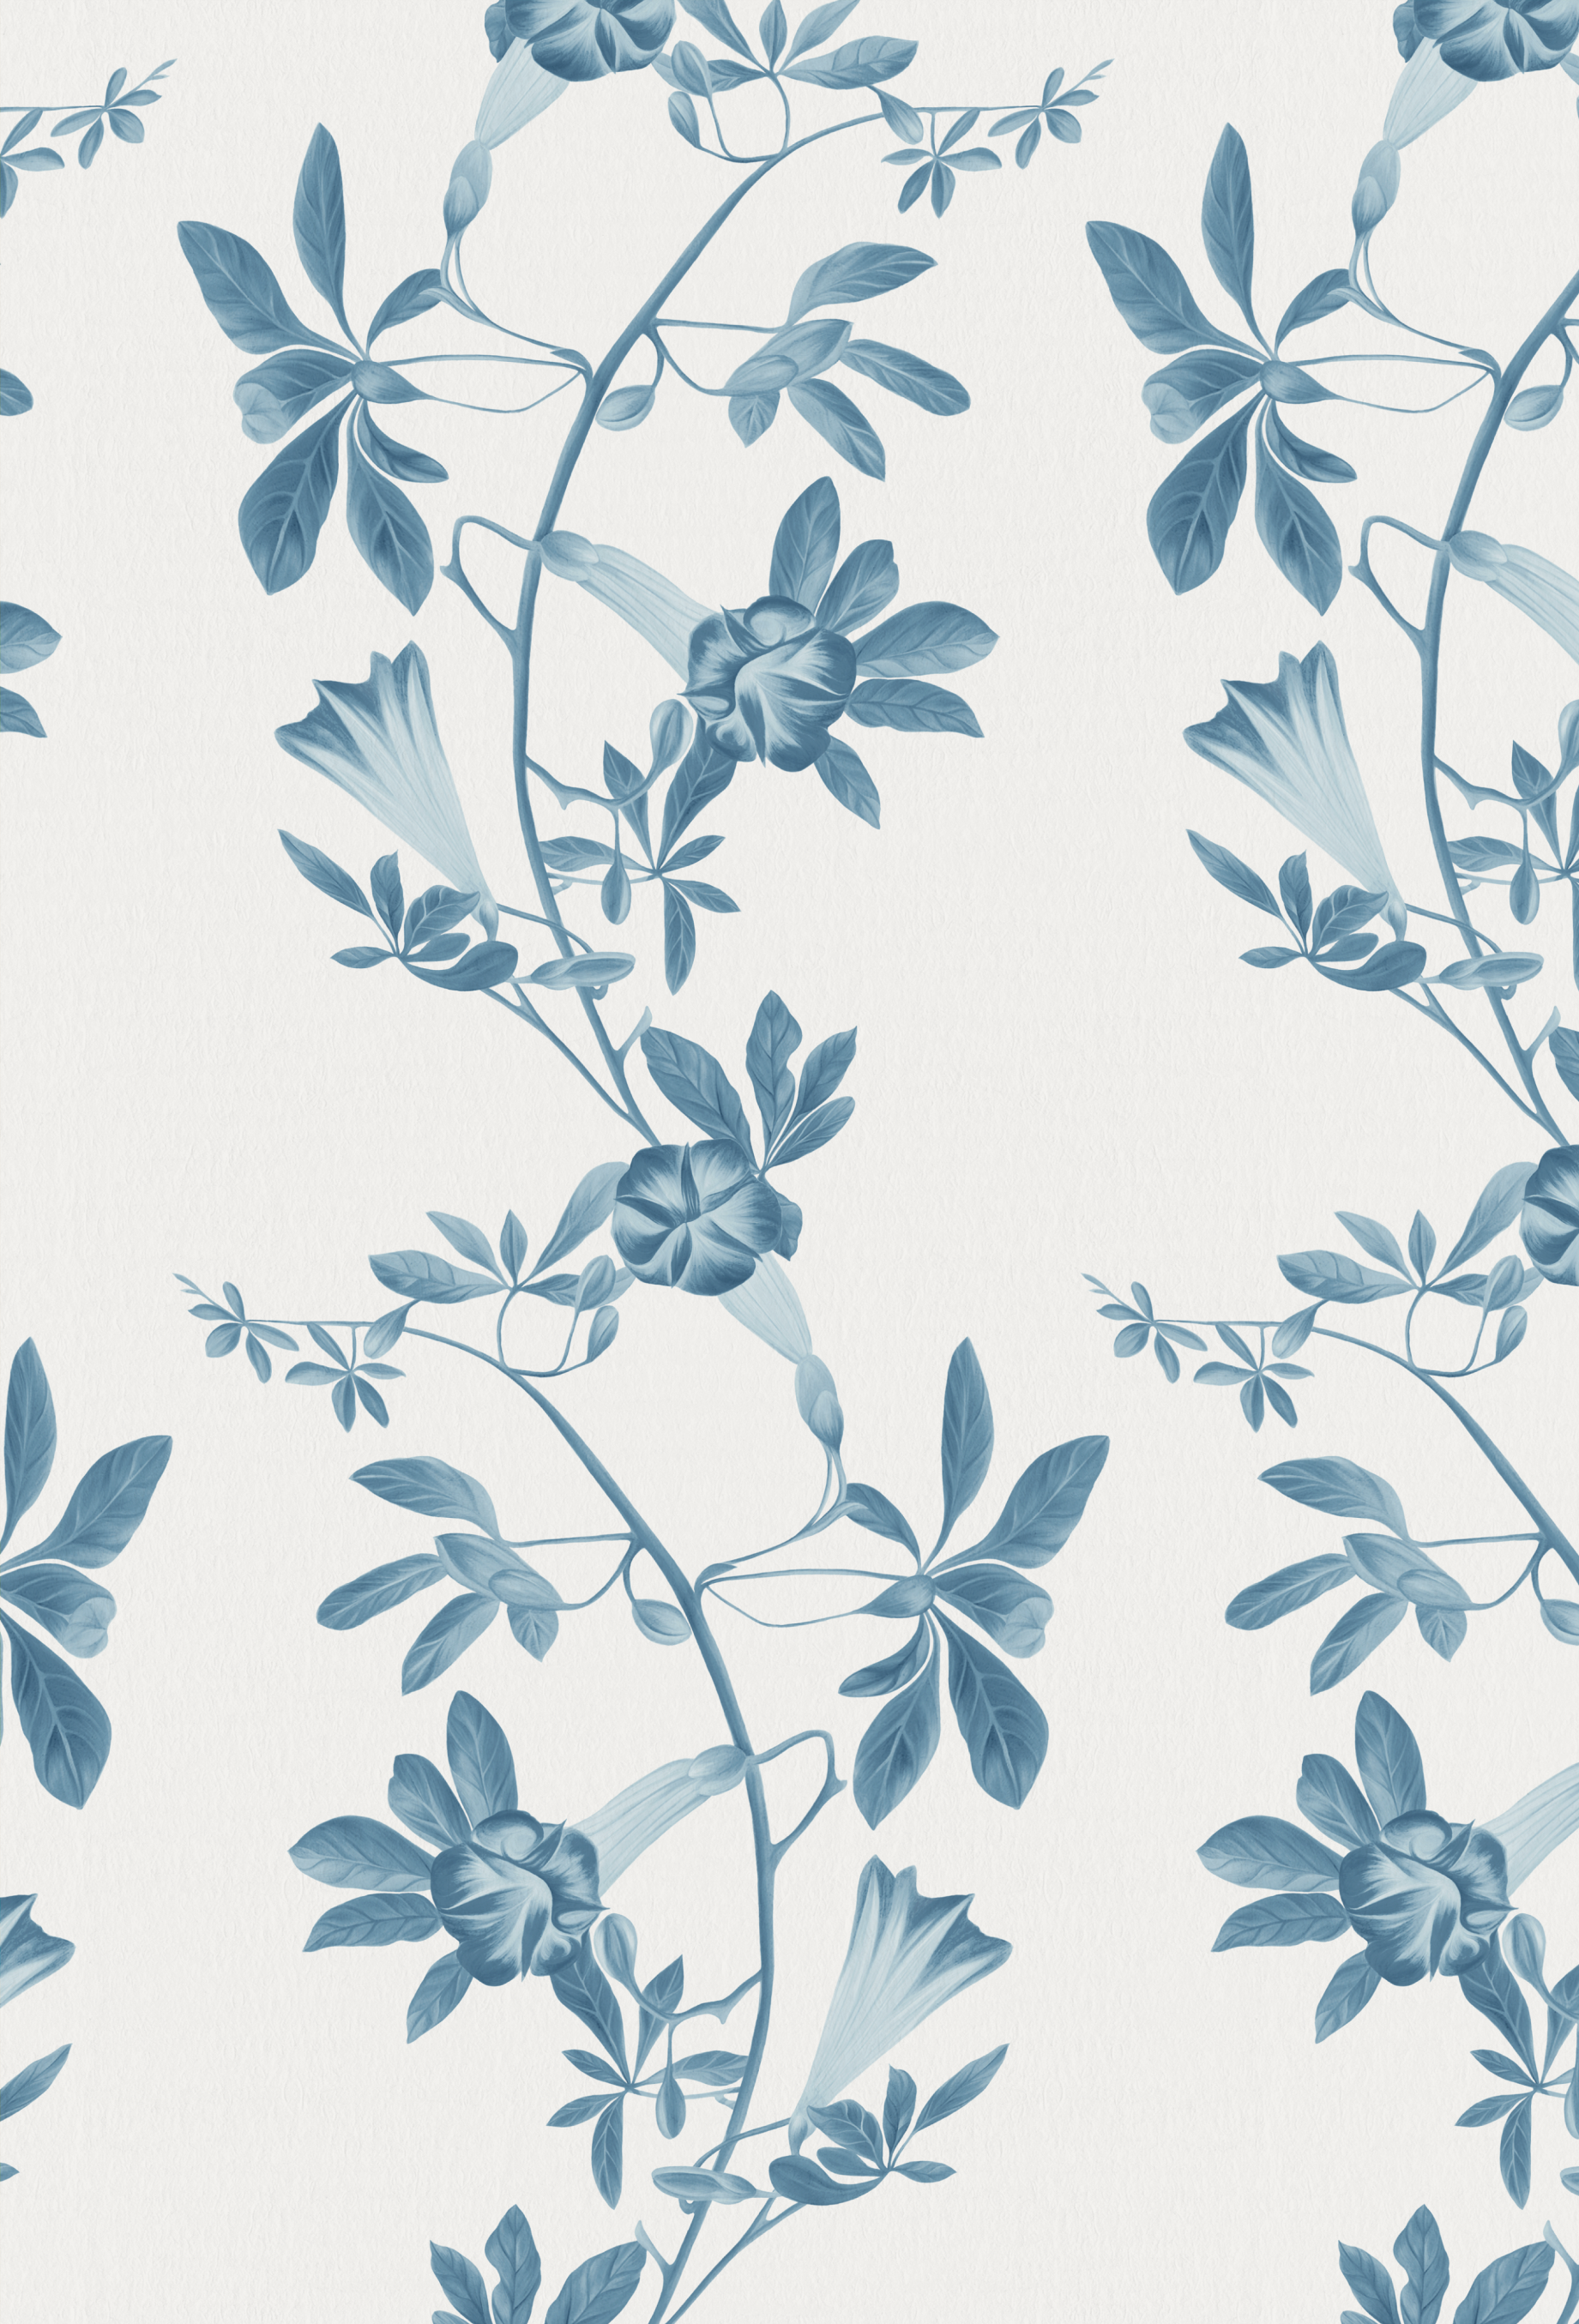 The midsummer in Iris designer wallpaper made of blue florals in a toile vine by Deus ex Gardenia.